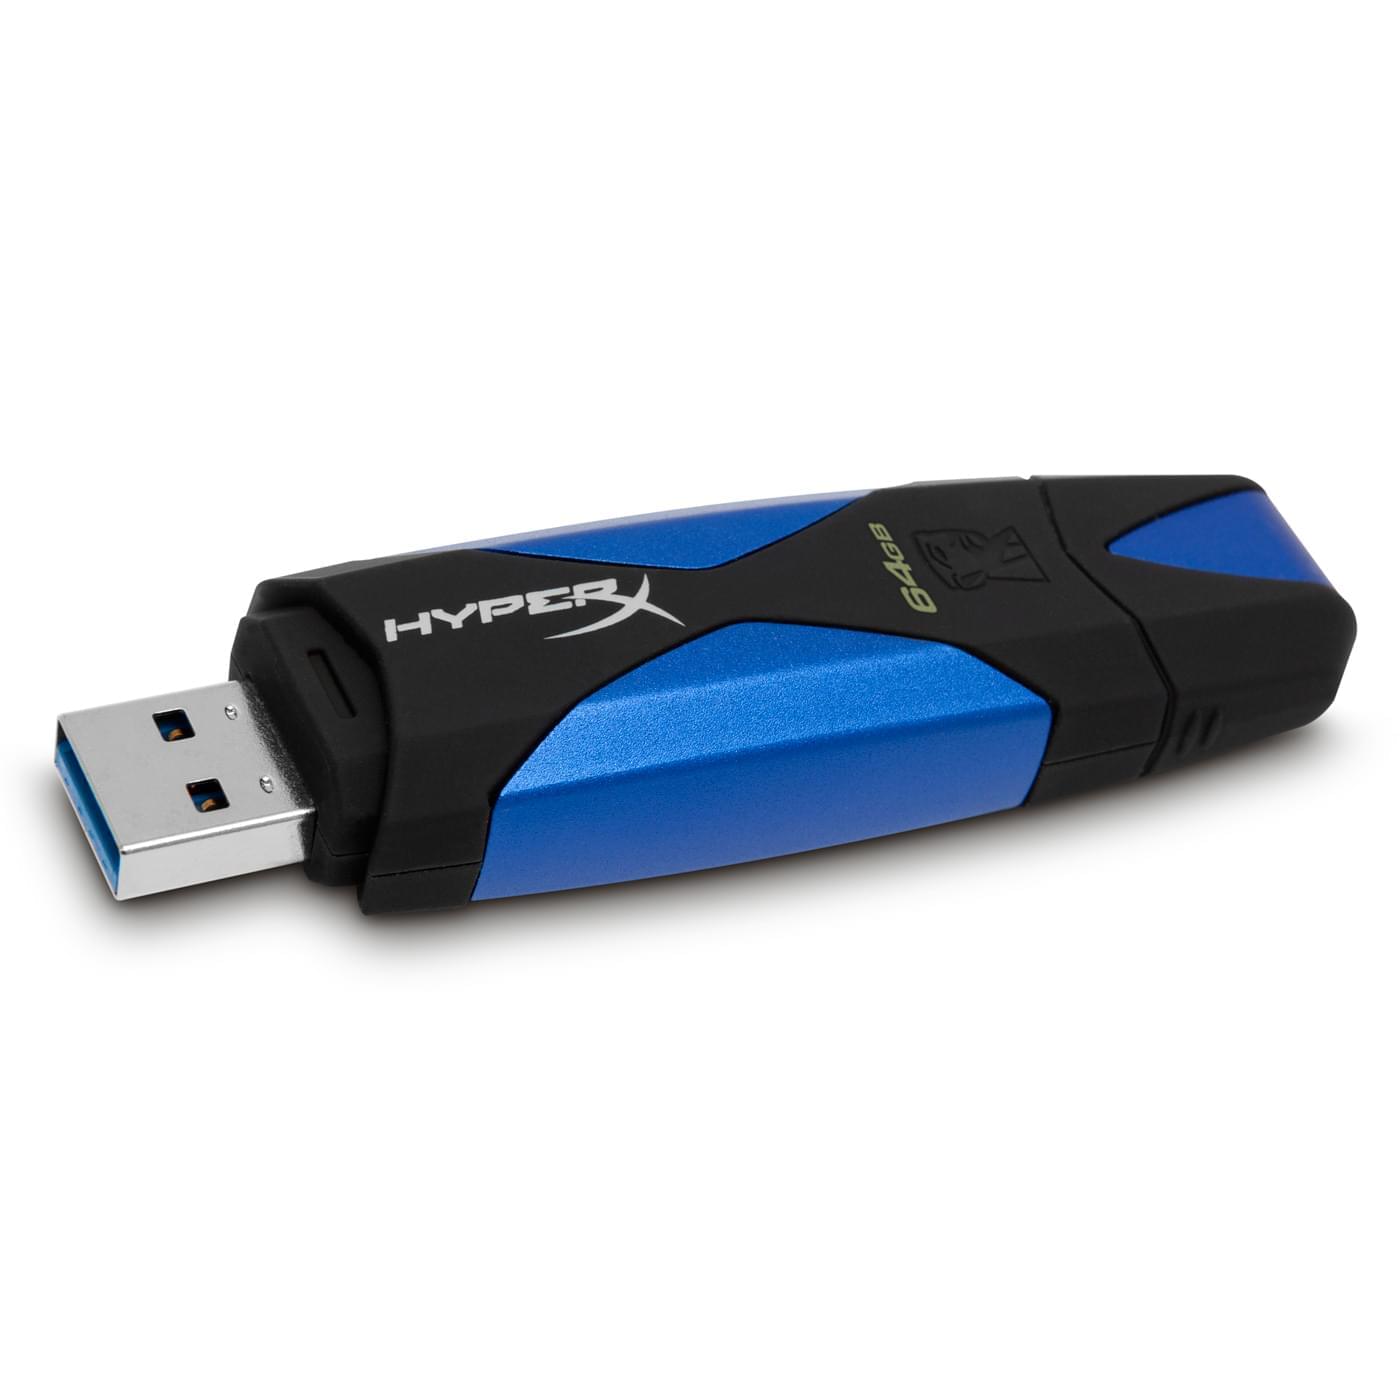 Kingston 64Go USB 3.0 HyperX - Clé USB Kingston - Cybertek.fr - 0